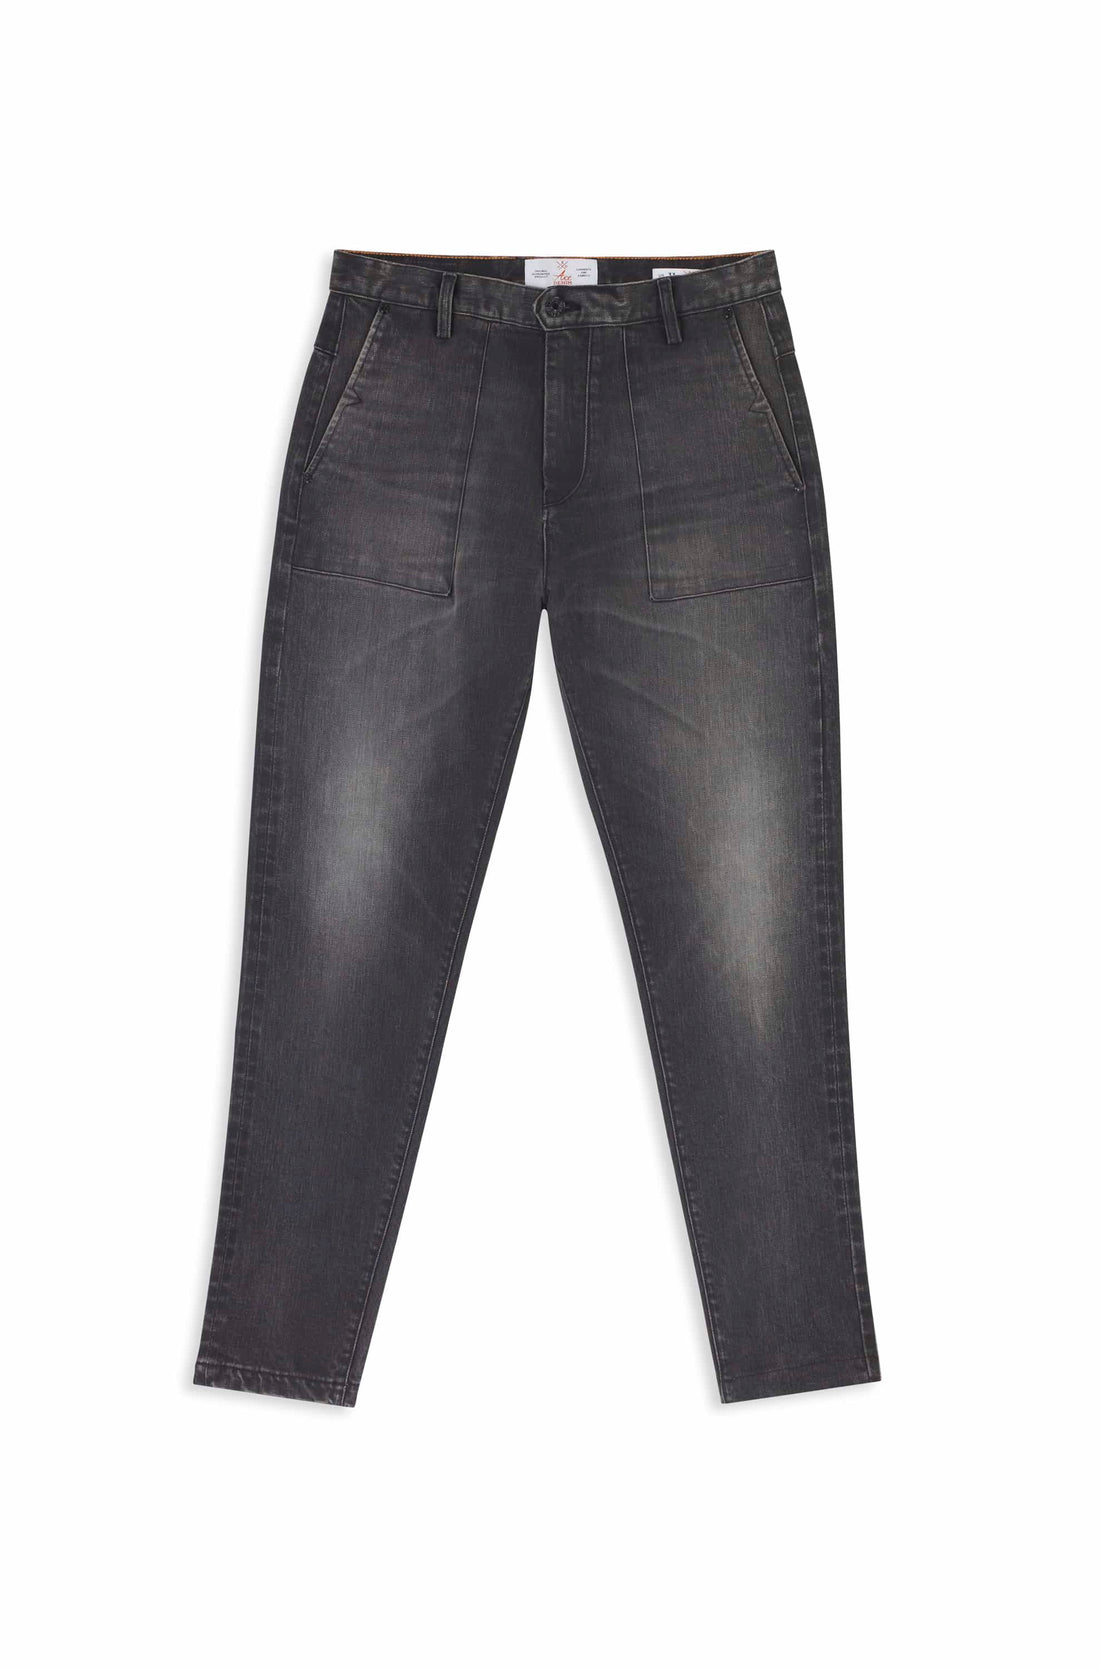 jeans homme coupe cargo gris foncé tissu selvedge japonais